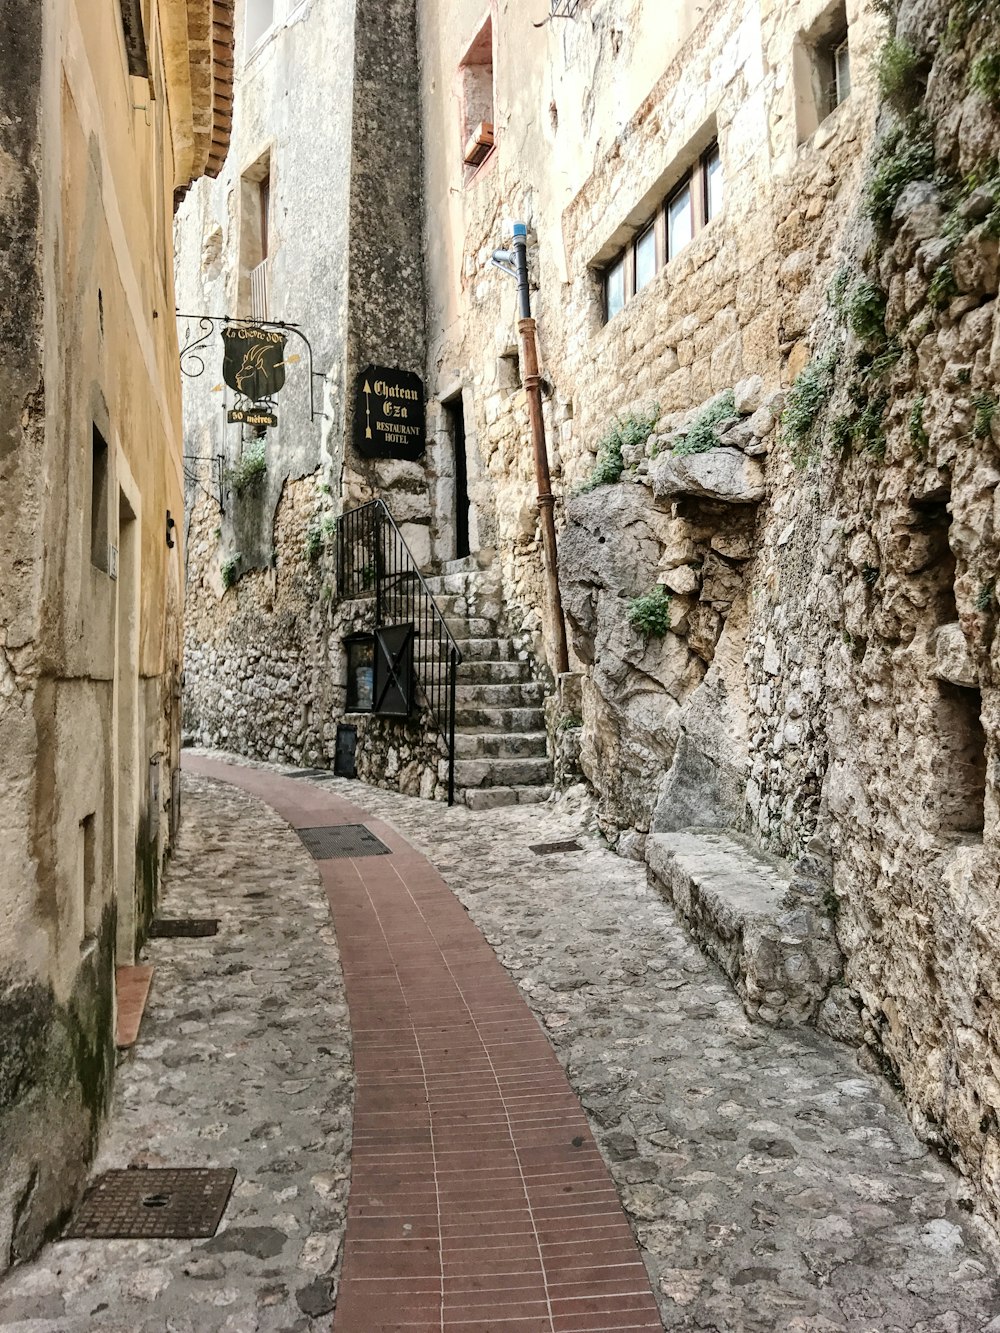 une rue étroite avec des bâtiments en pierre et une passerelle en brique